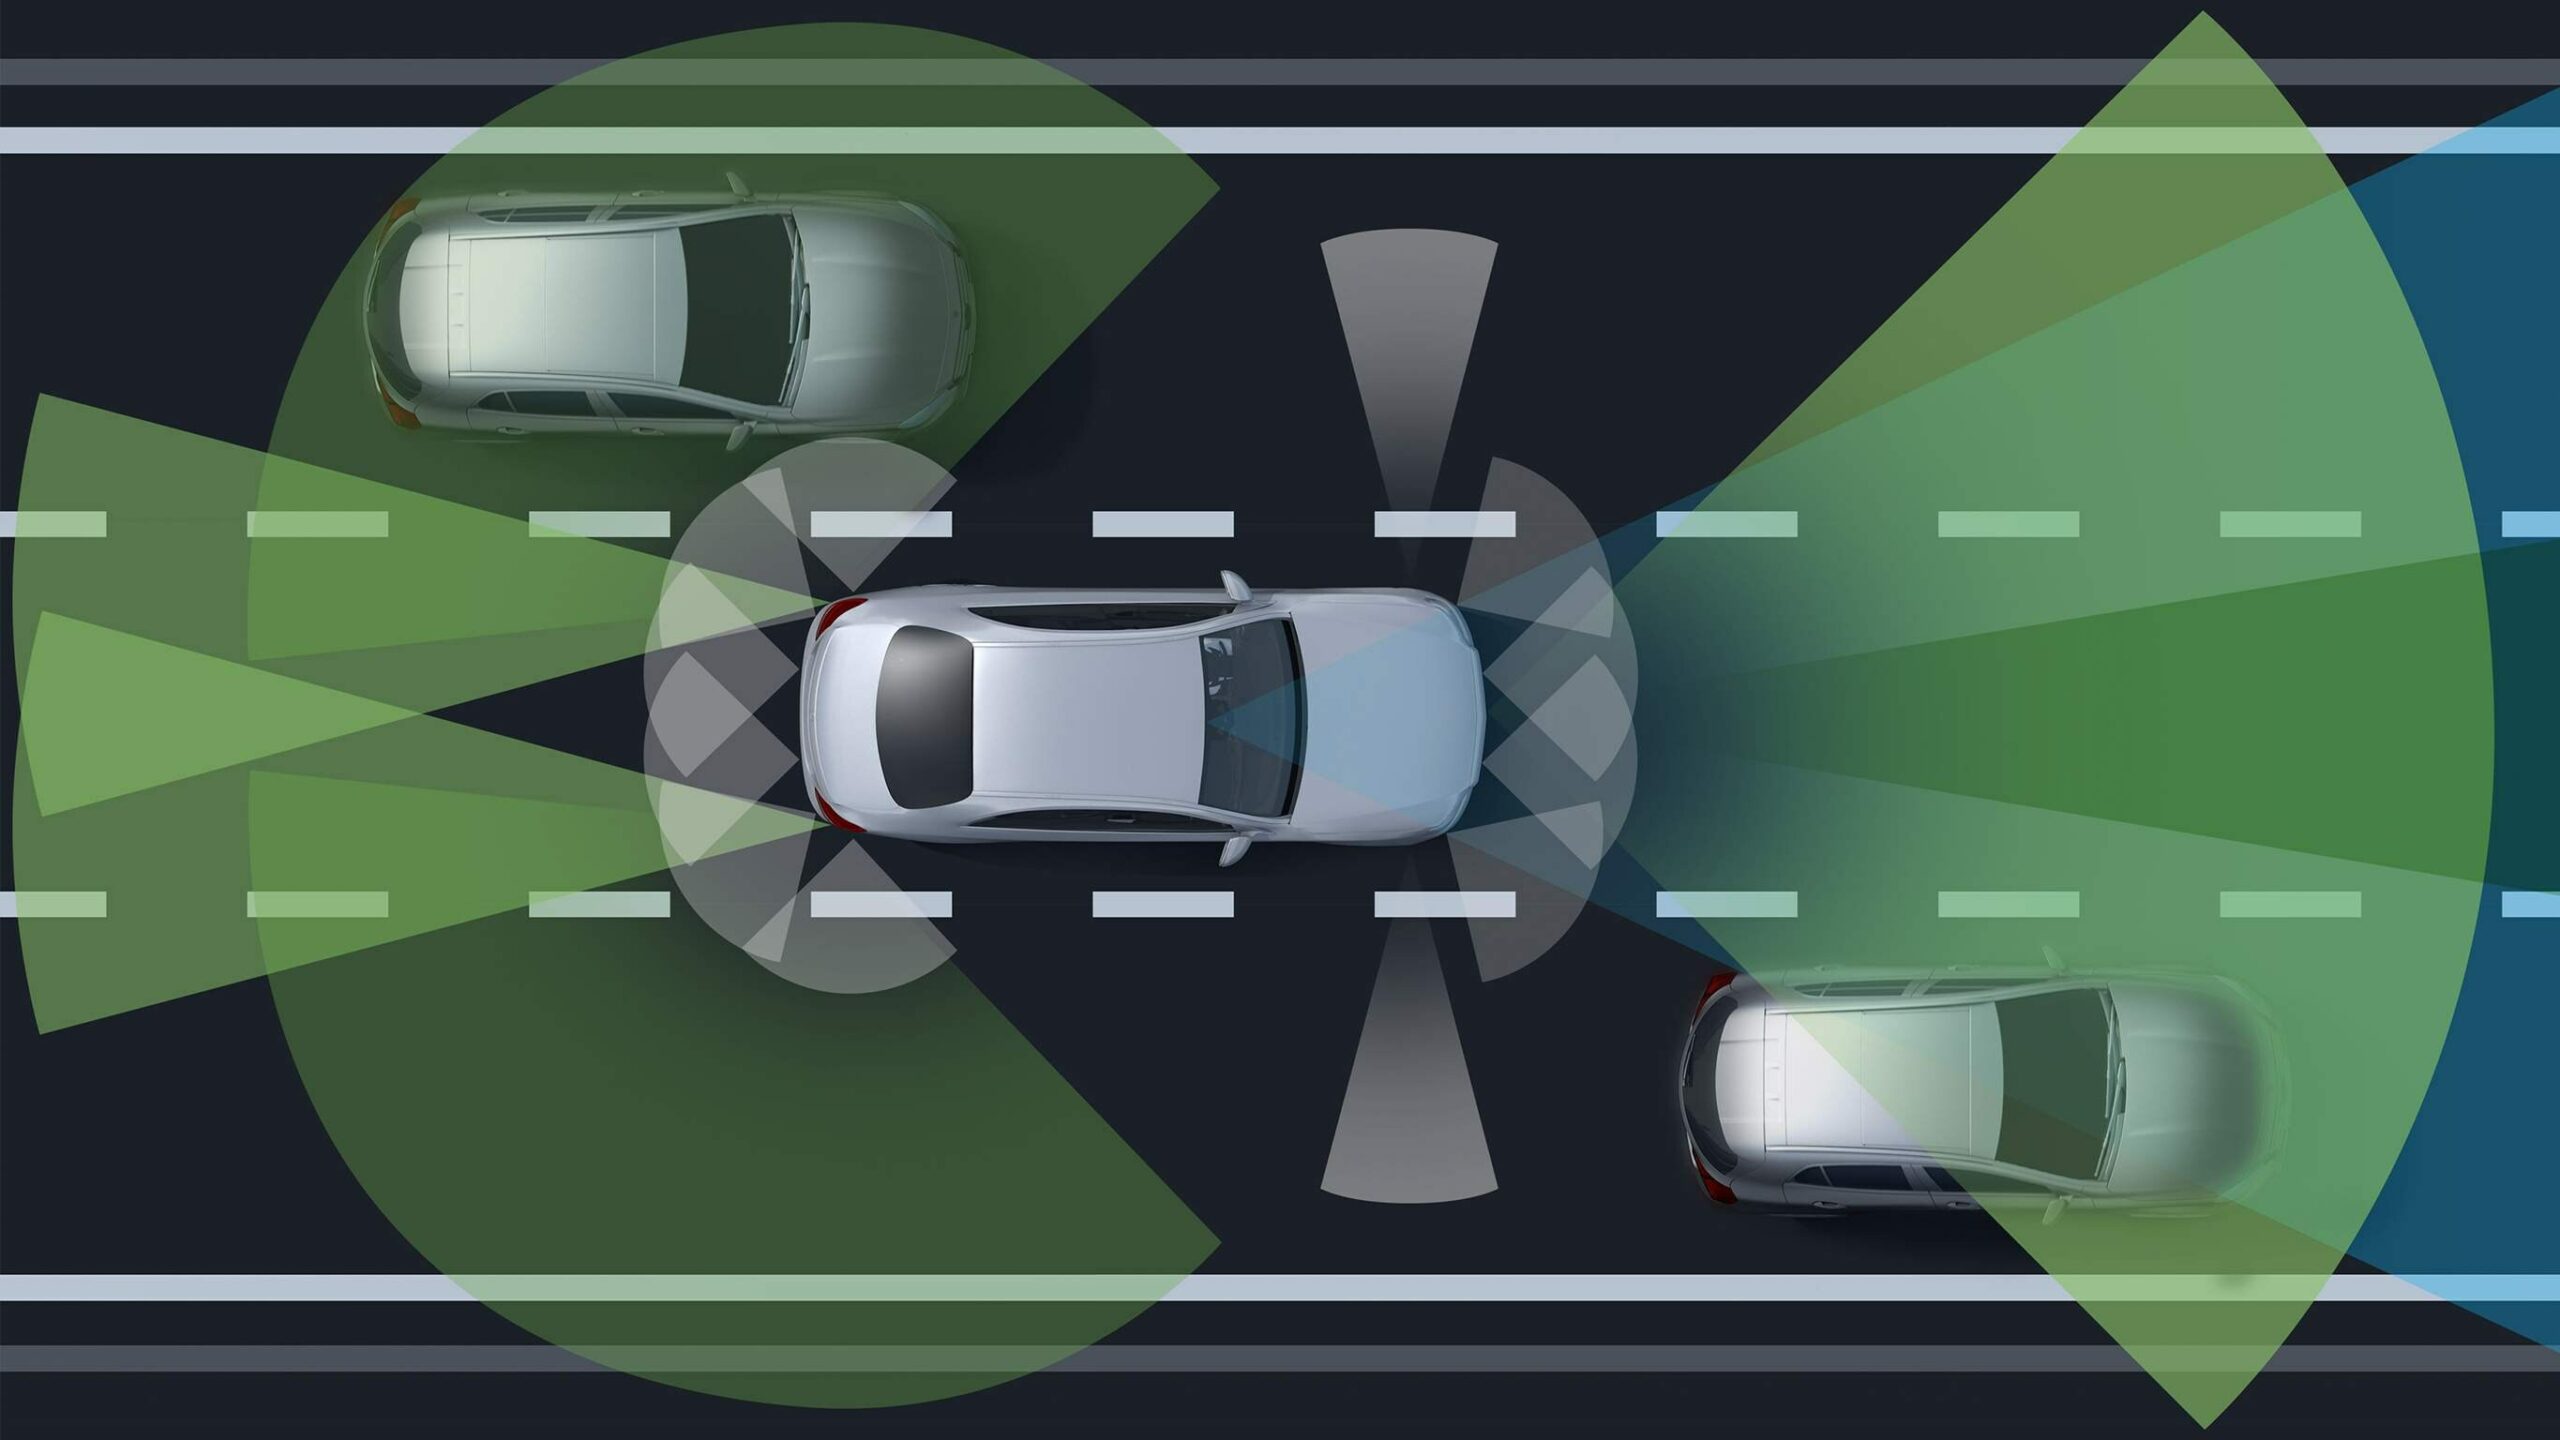 Sistema de manejo inteligente dentro de la GLS SUV de Mercedes-Benz